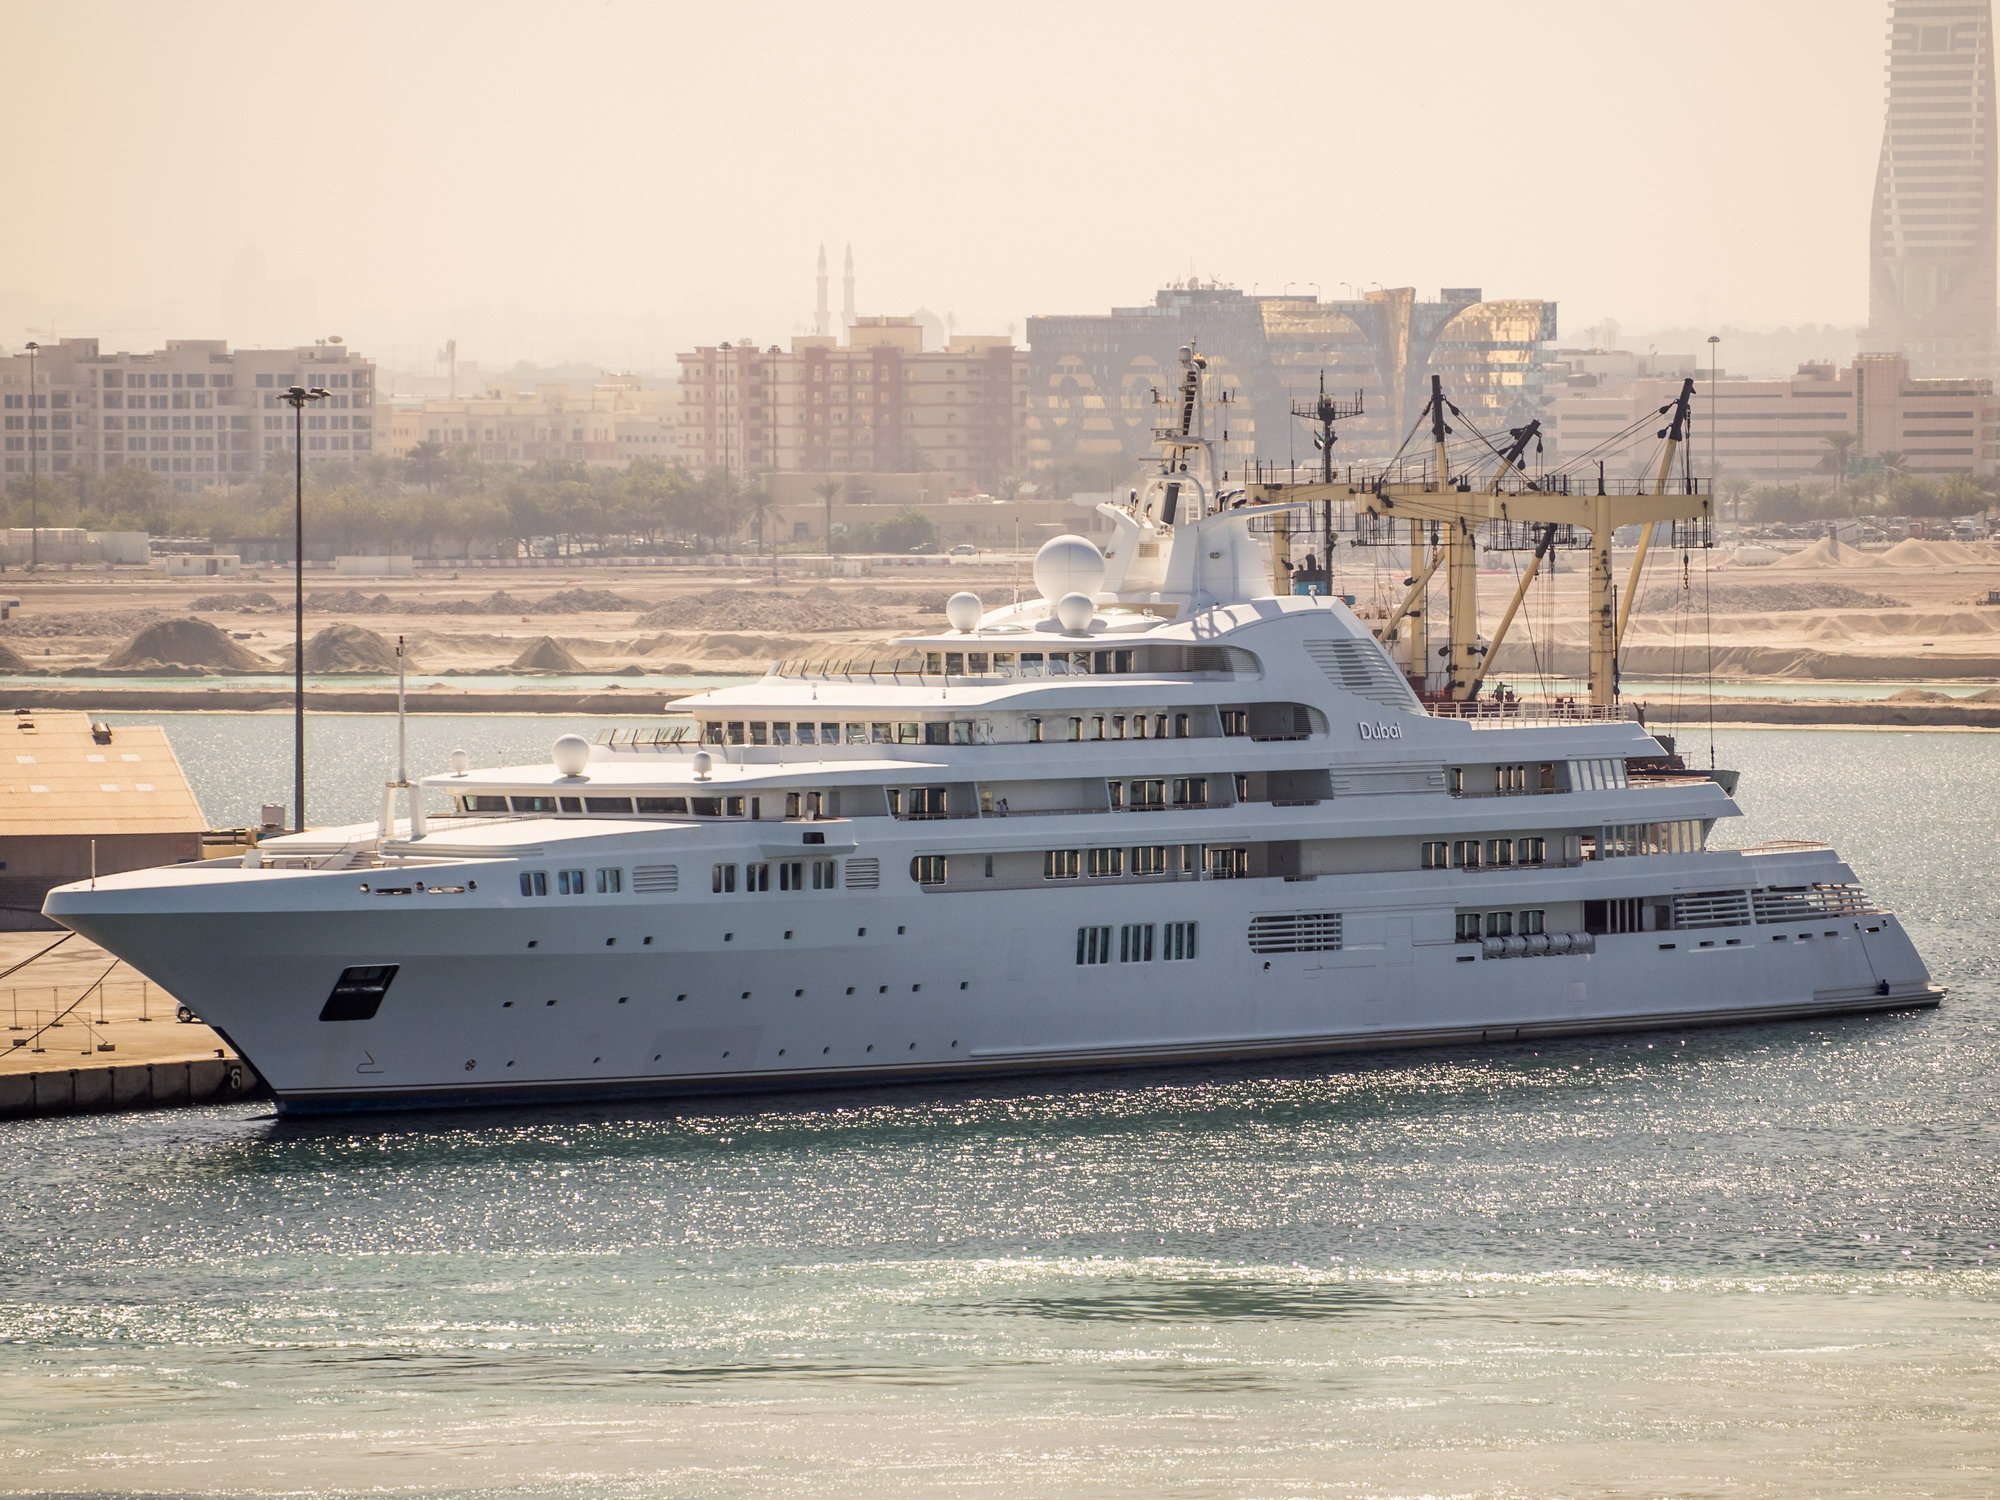 DUBAI Yacht - Le superyacht de 500 millions de dollars du Sheikh Mohmmed - Platinum Yachts  - 2006